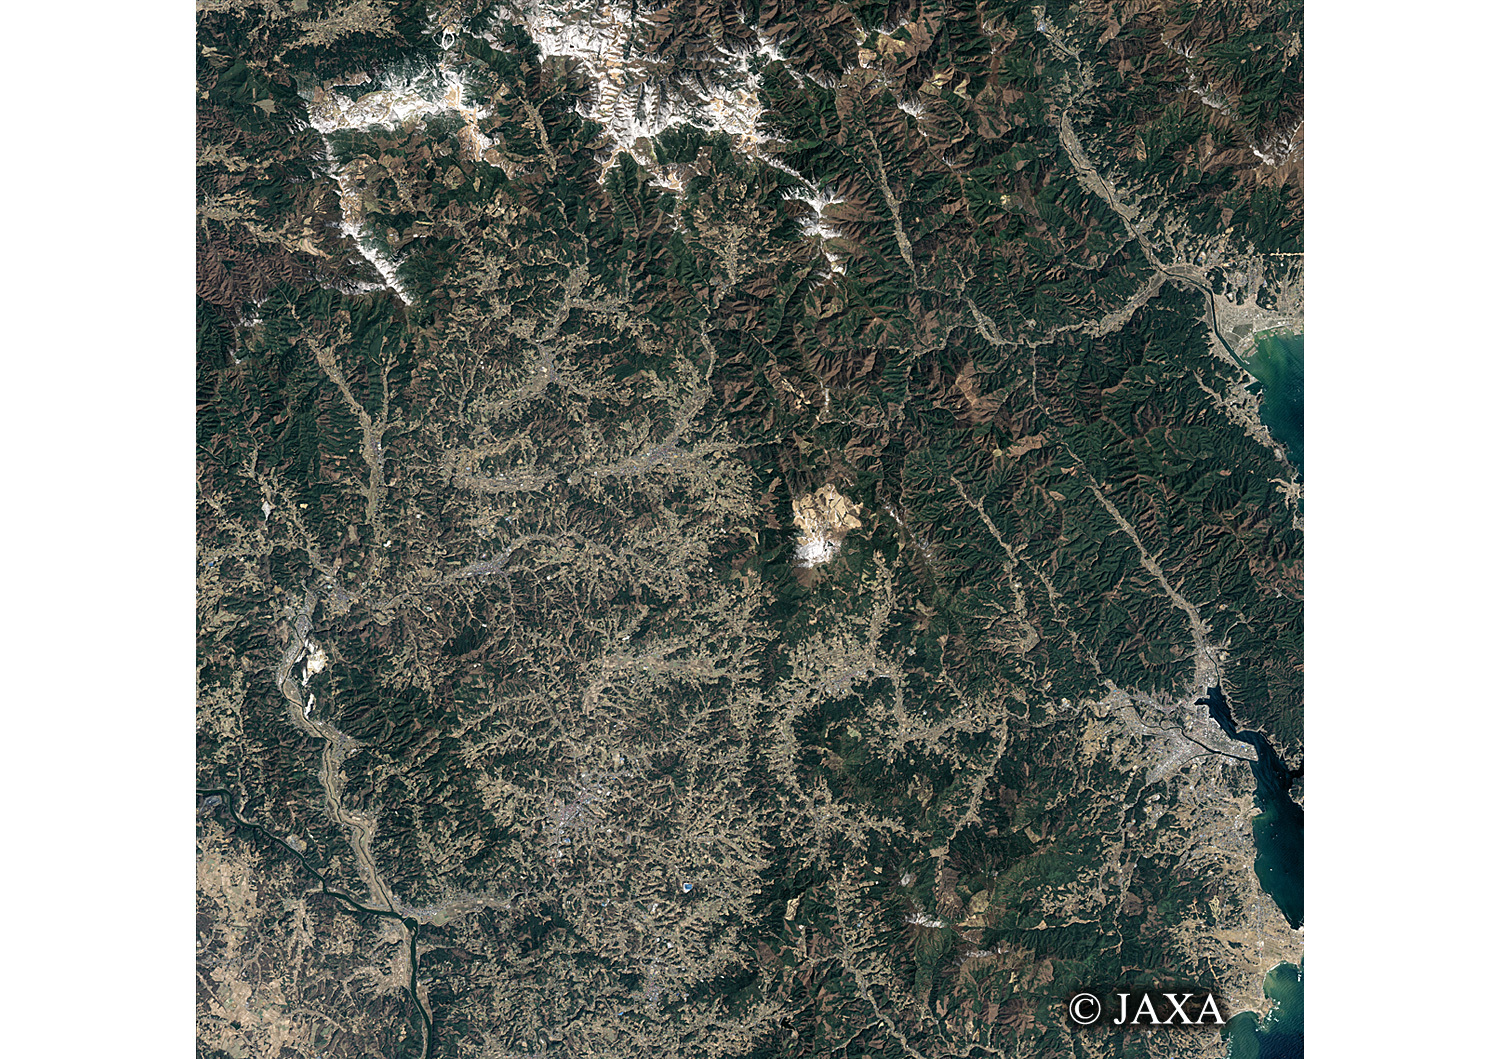 だいちから見た日本の都市 震災後の陸前高田市-気仙沼市:衛星画像